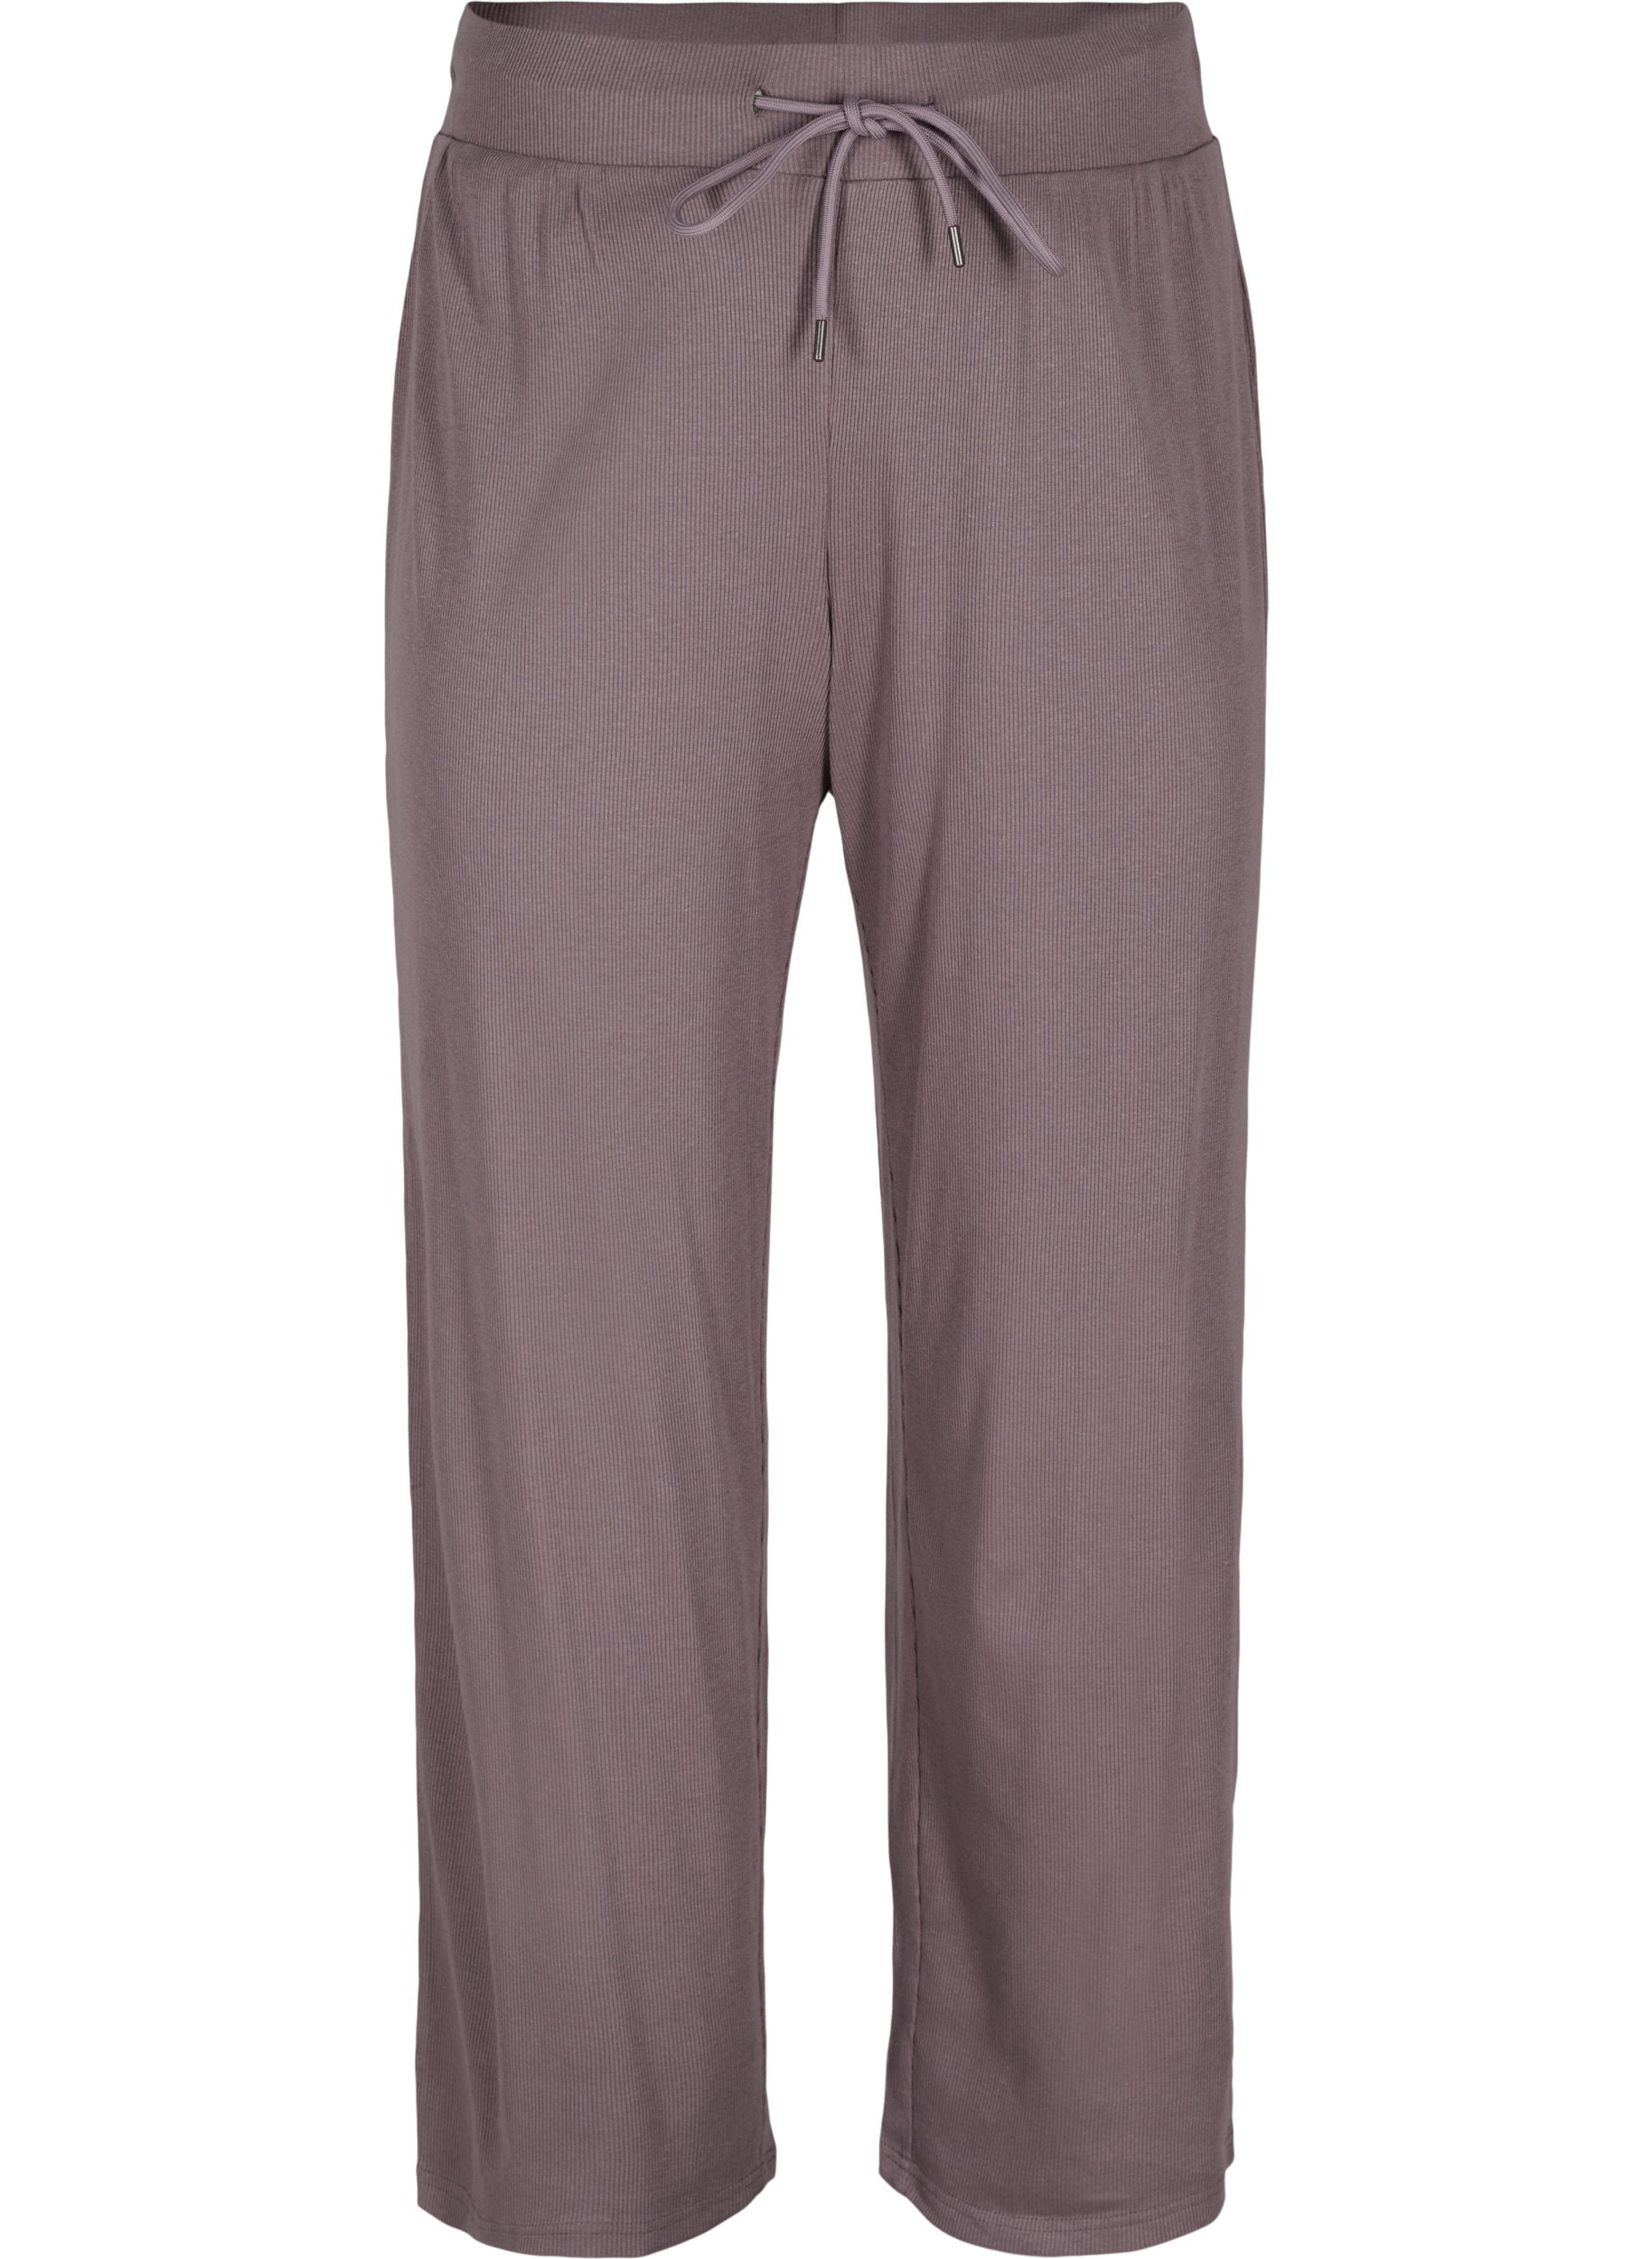 Pantalon ample en coton mélangé, Sparrow, Packshot image number 0